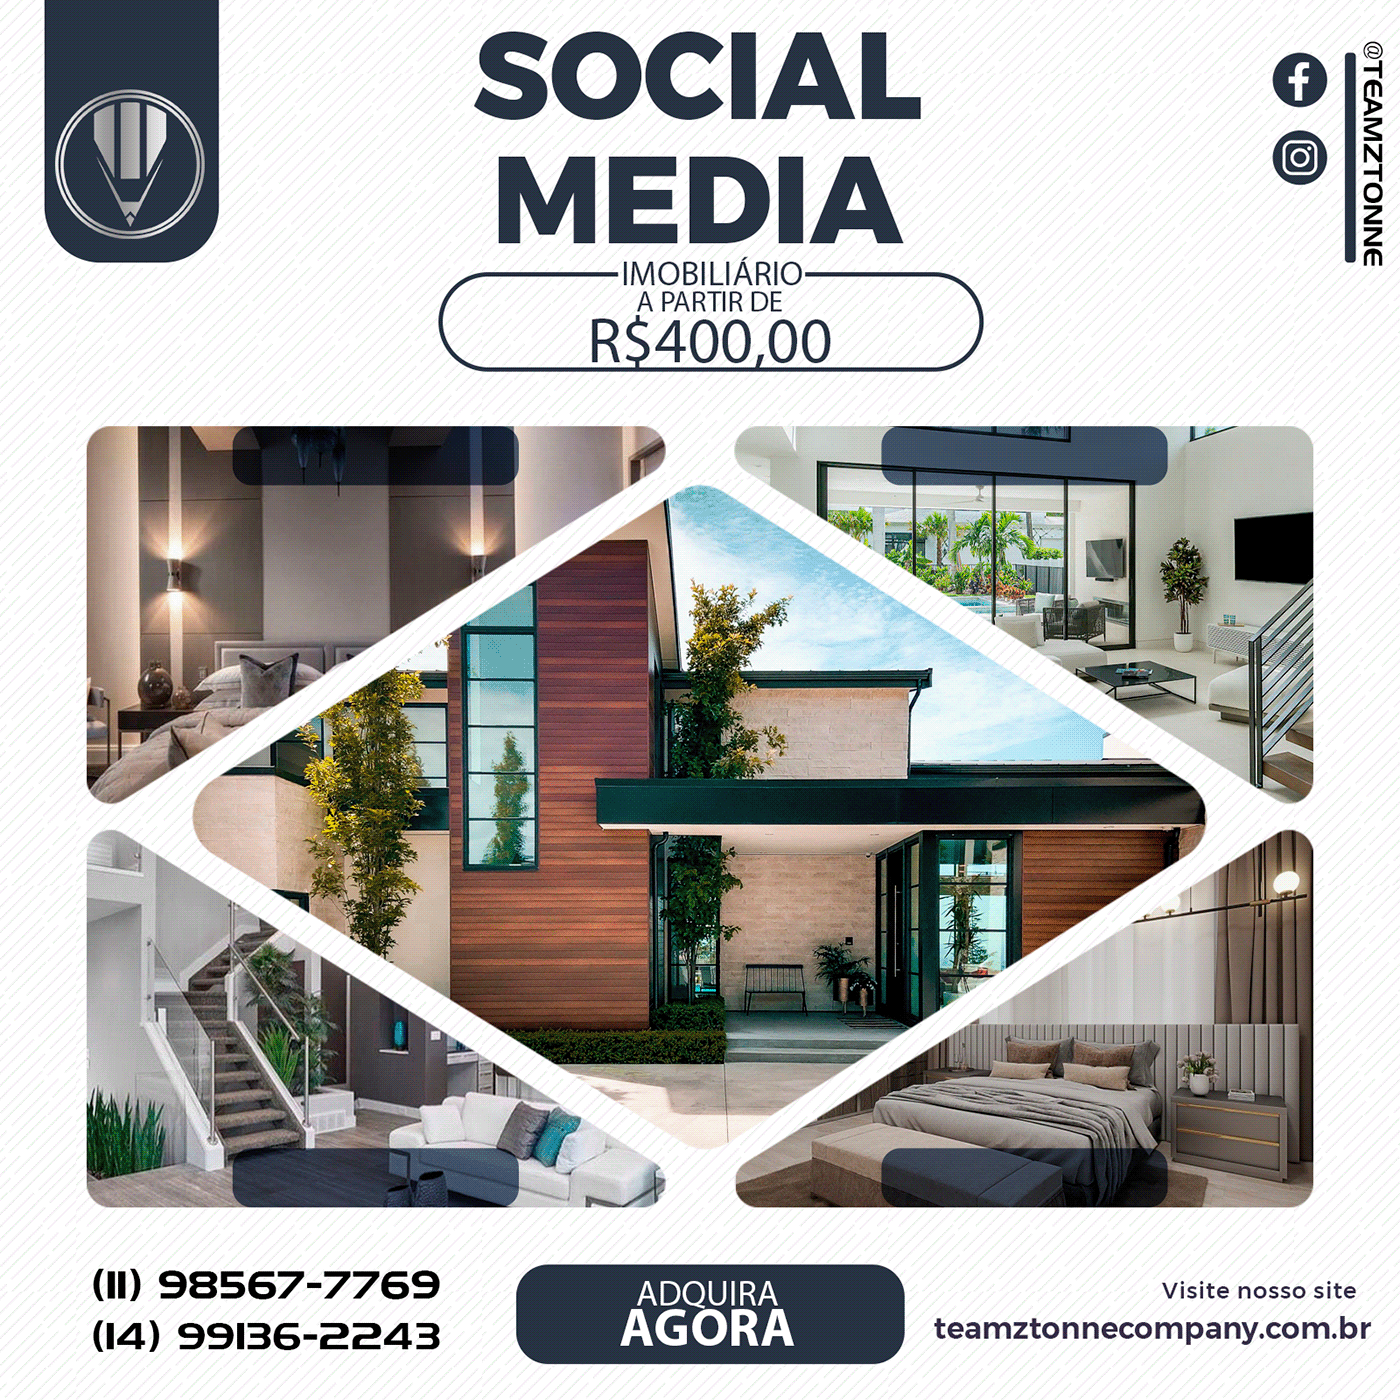 imobiliário imobiliária social media post marketing   Social media post design Socialmedia Imobiliário Marketing